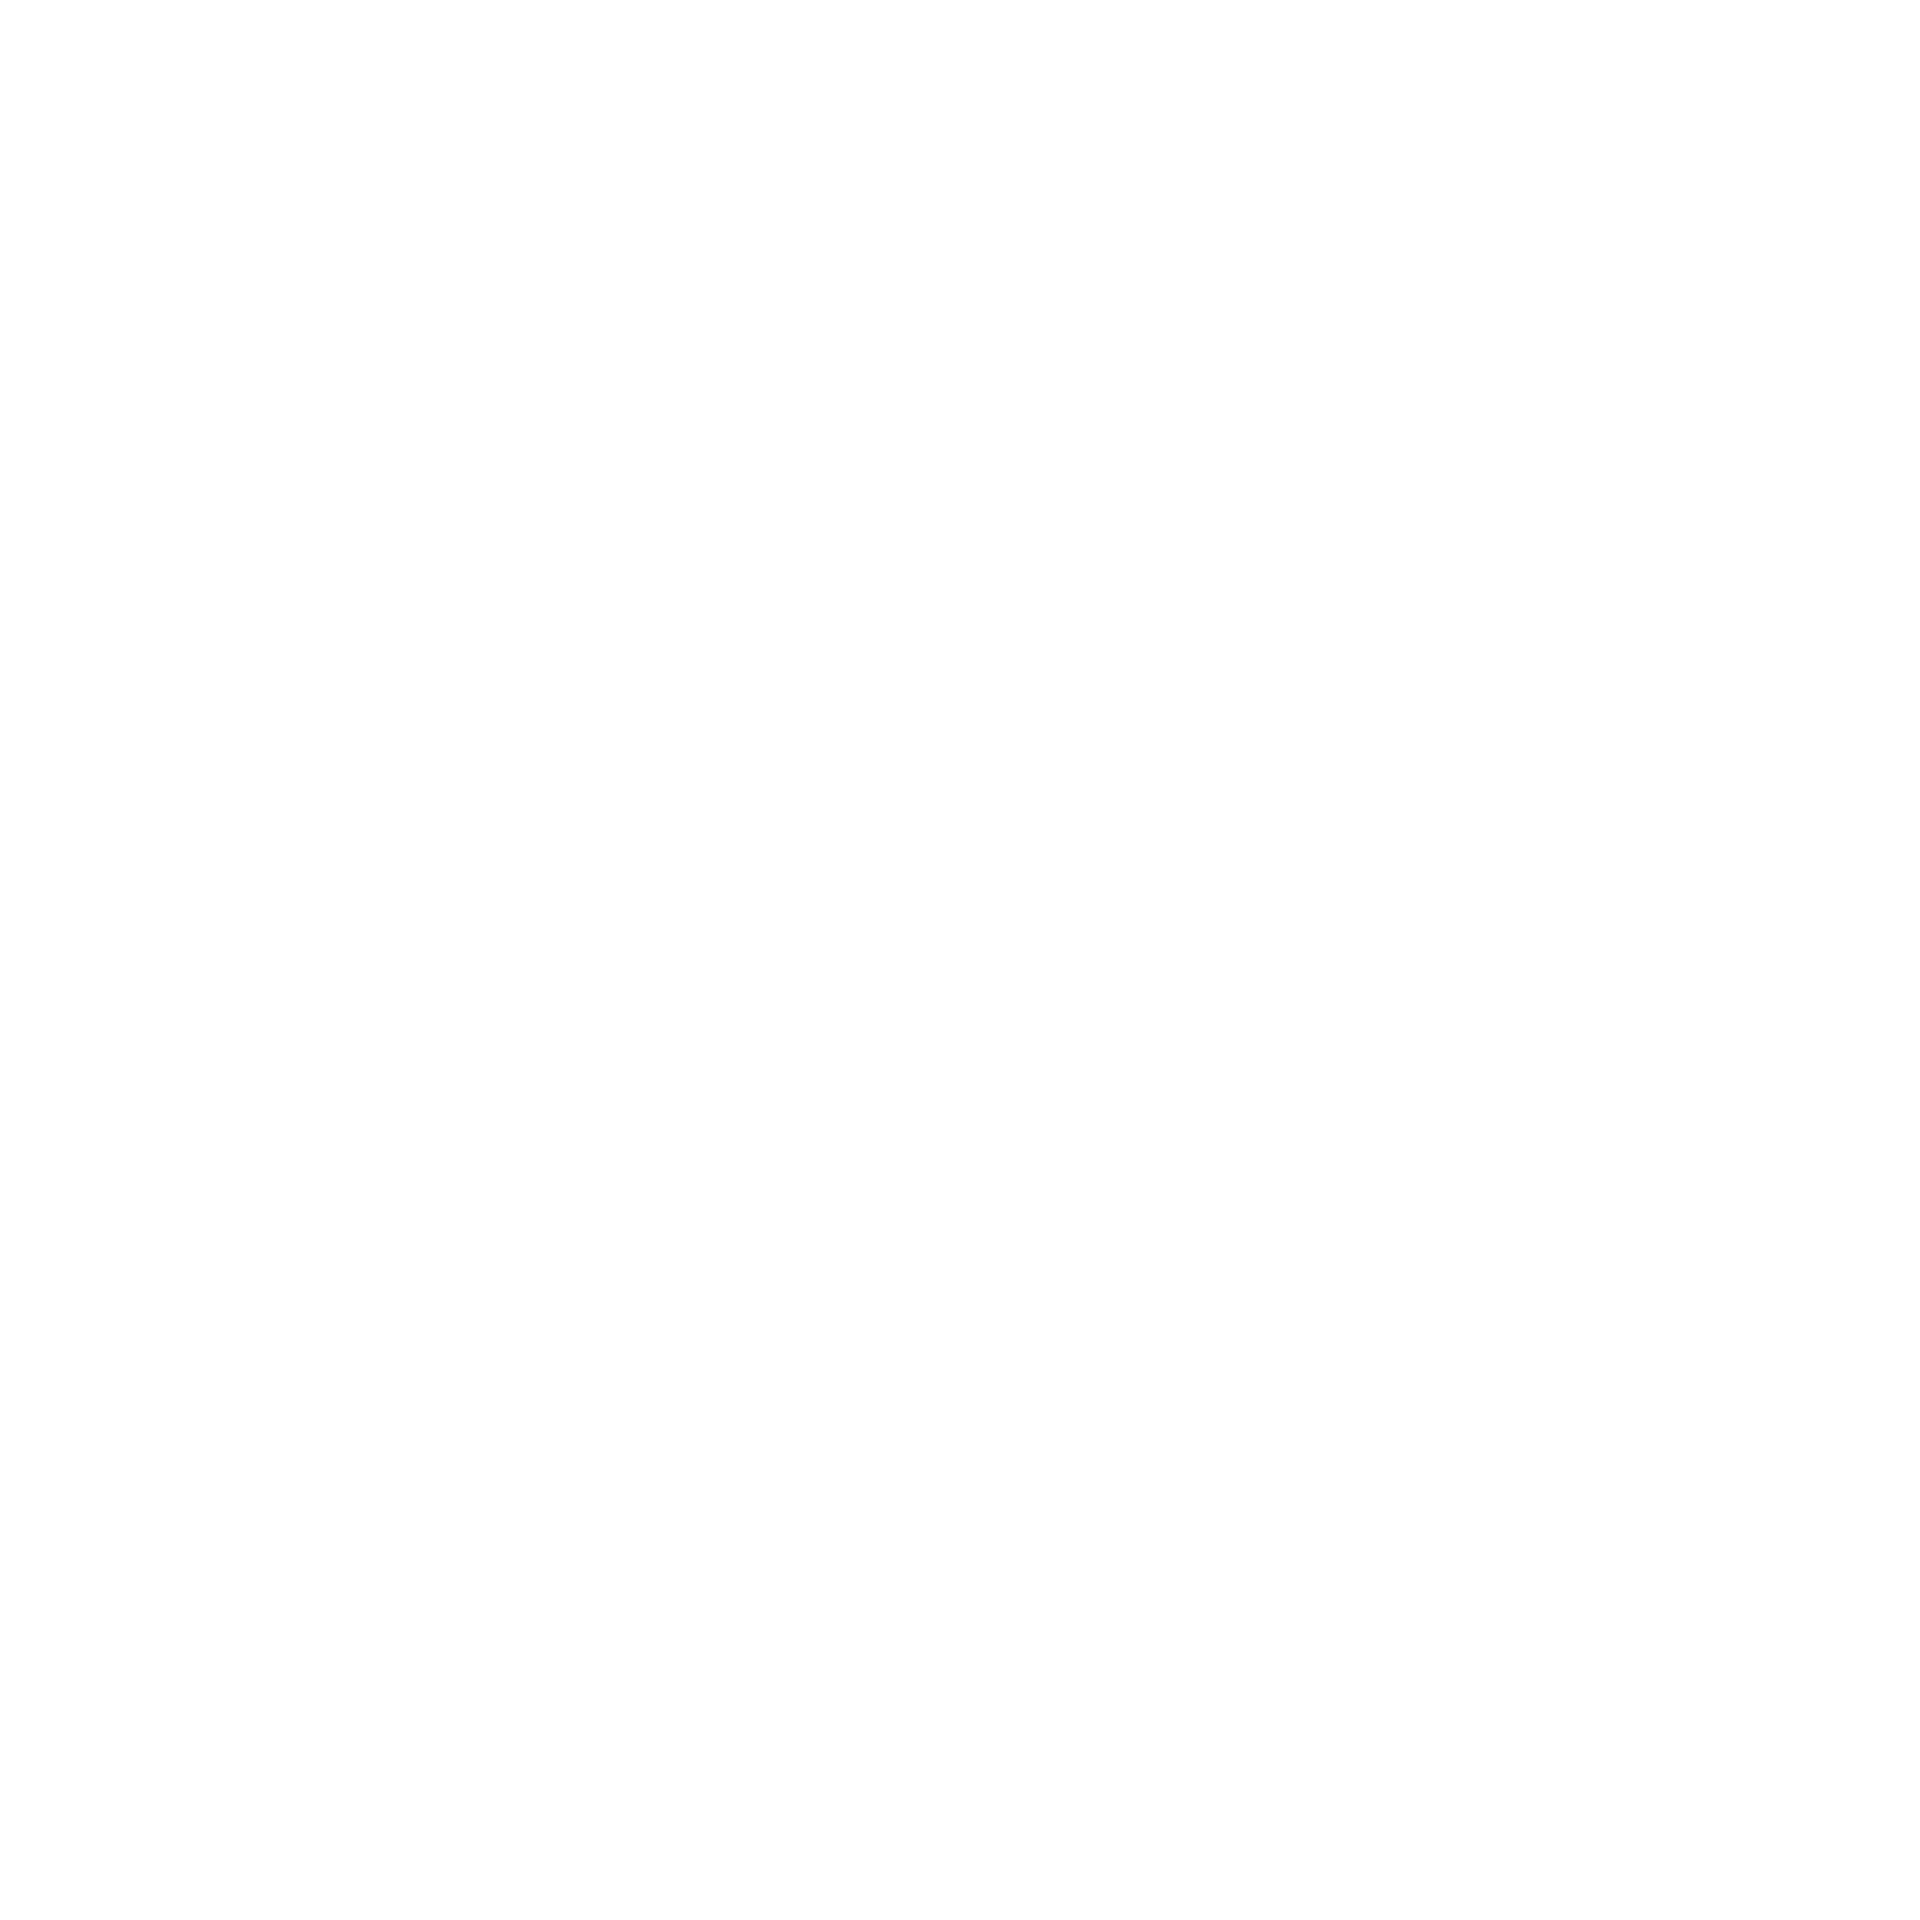 92.5%